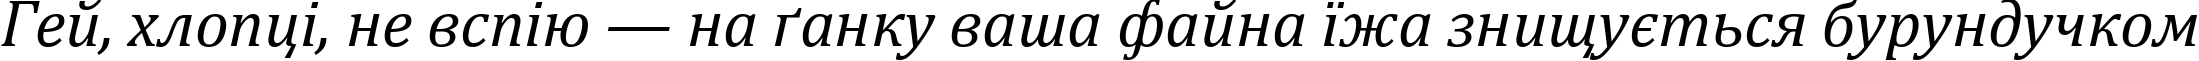 Пример написания шрифтом Cambria Italic текста на украинском